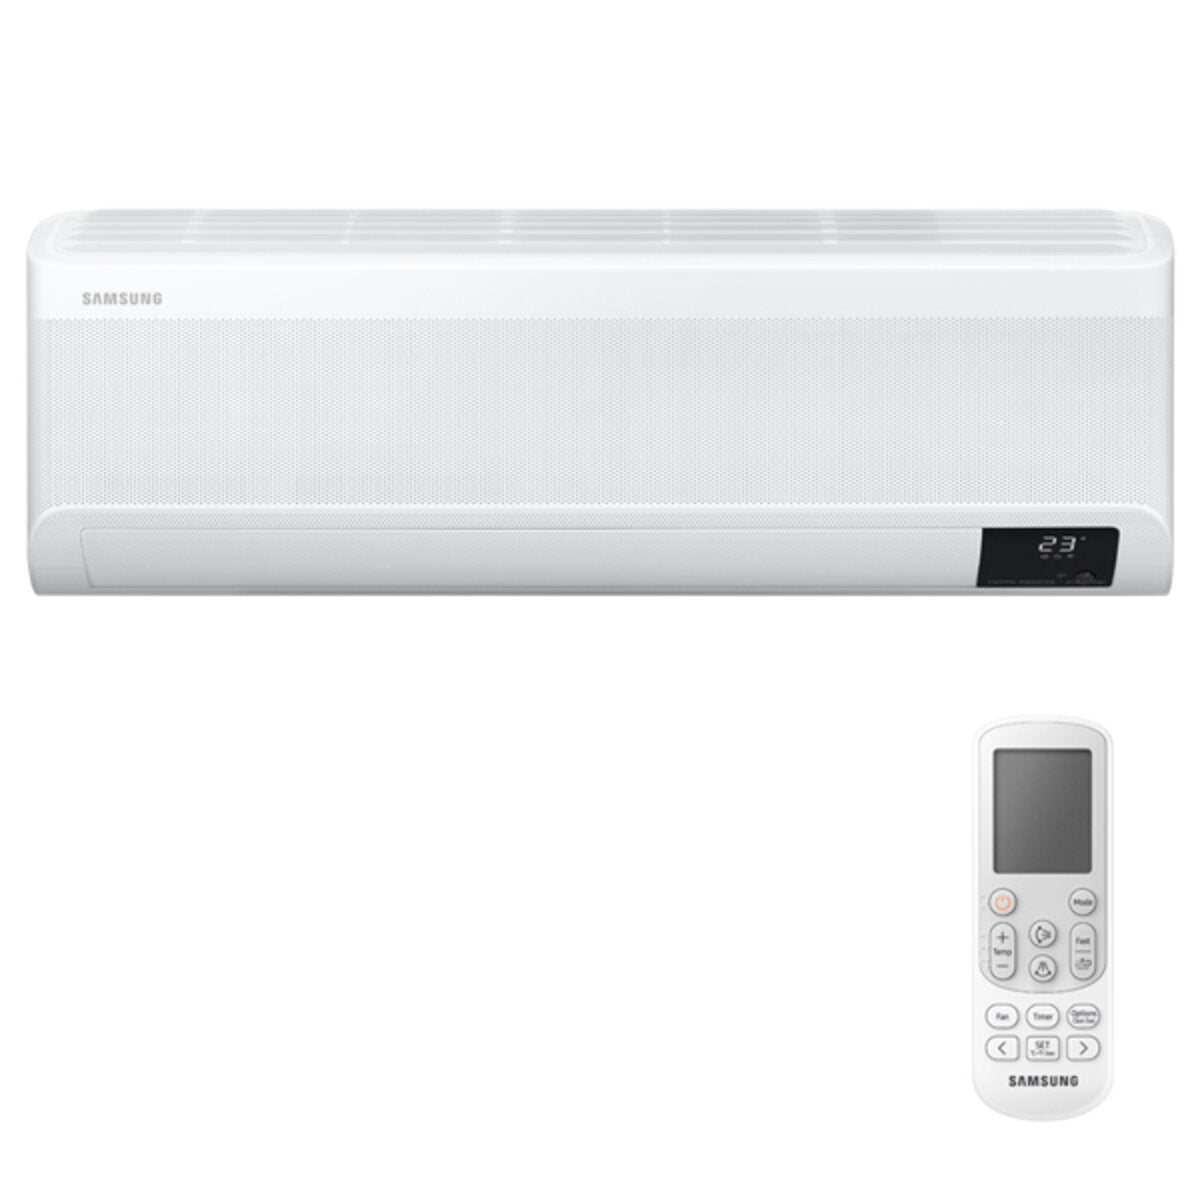 Samsung windfree Klimaanlage Avant Penta Split 7000 + 7000 + 9000 + 12000 + 12000 BTU Inverter A++ WLAN Außengerät 10,0 kW